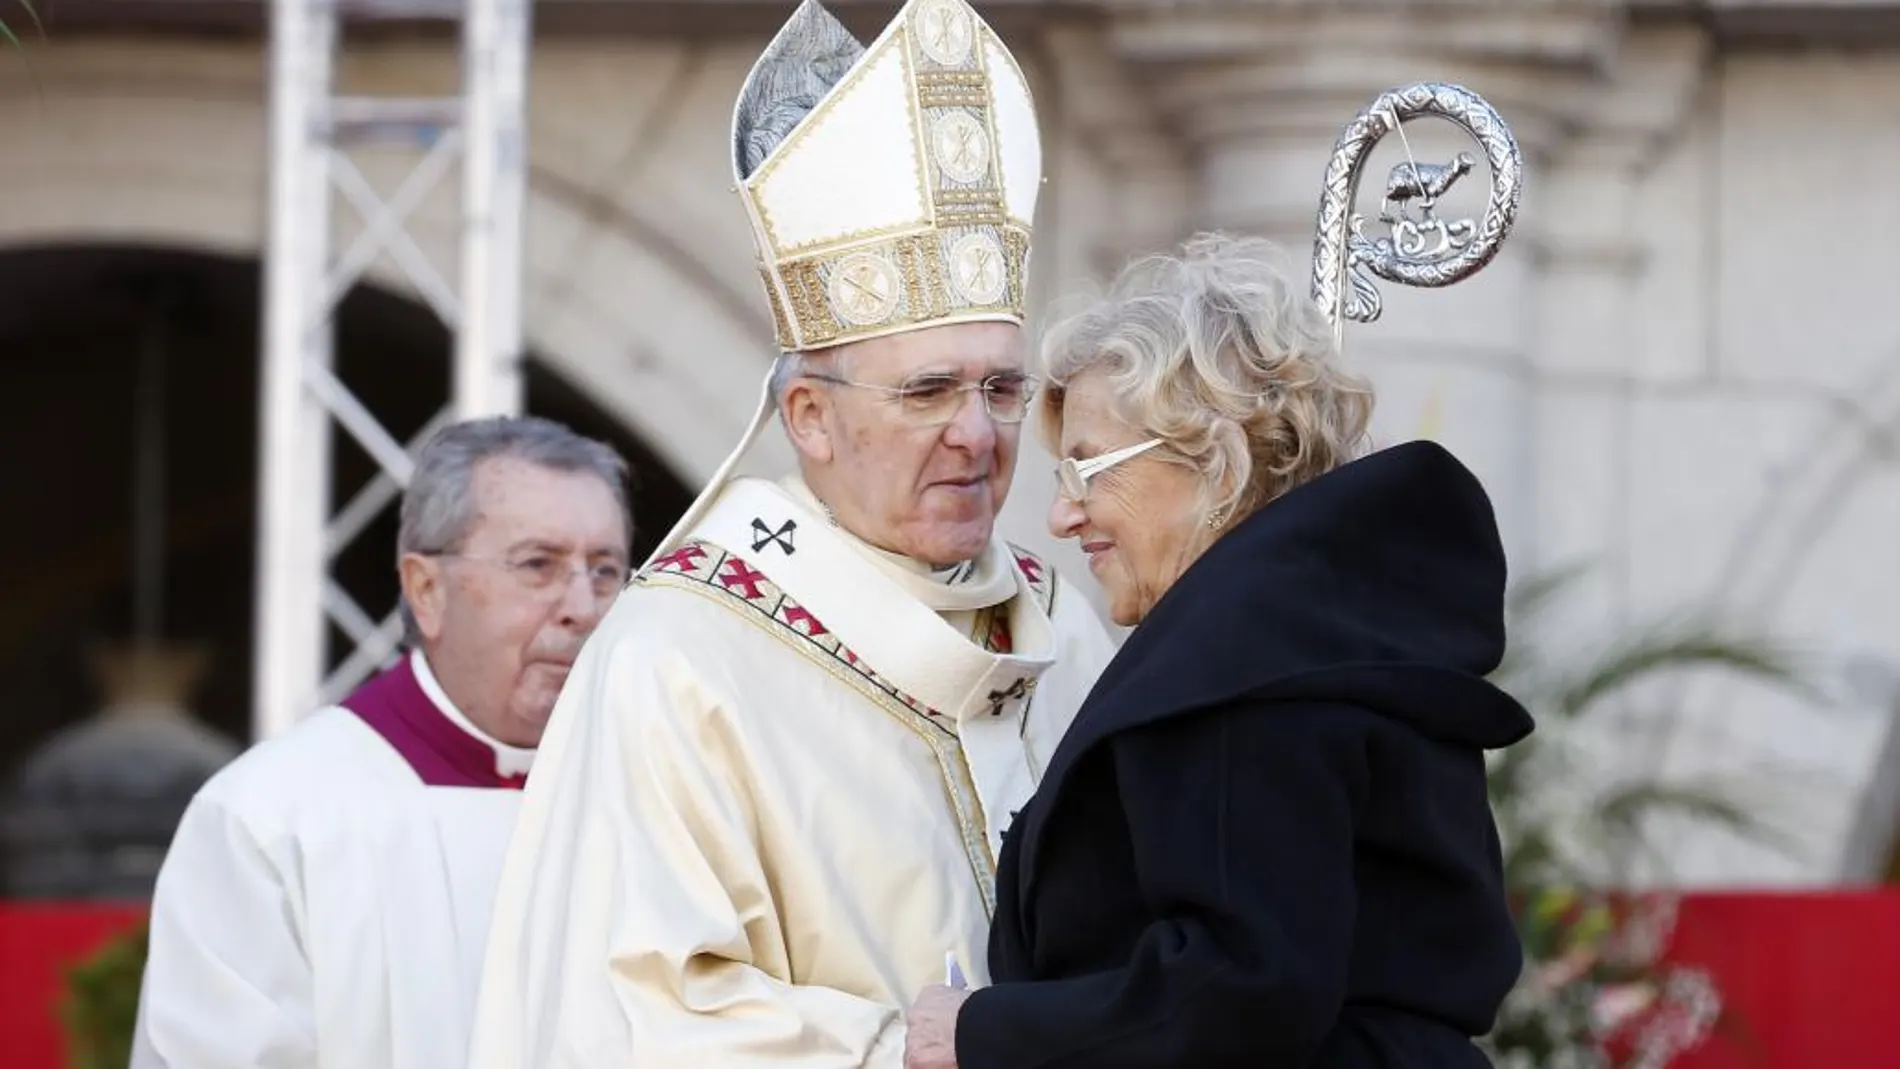 La alcaldesa de Madrid, Manuela Carmena, saluda al arzobispo de Madrid, Carlos Osoro, durante la misa en honor a la patrona de Madrid, la Virgen de la Almudena